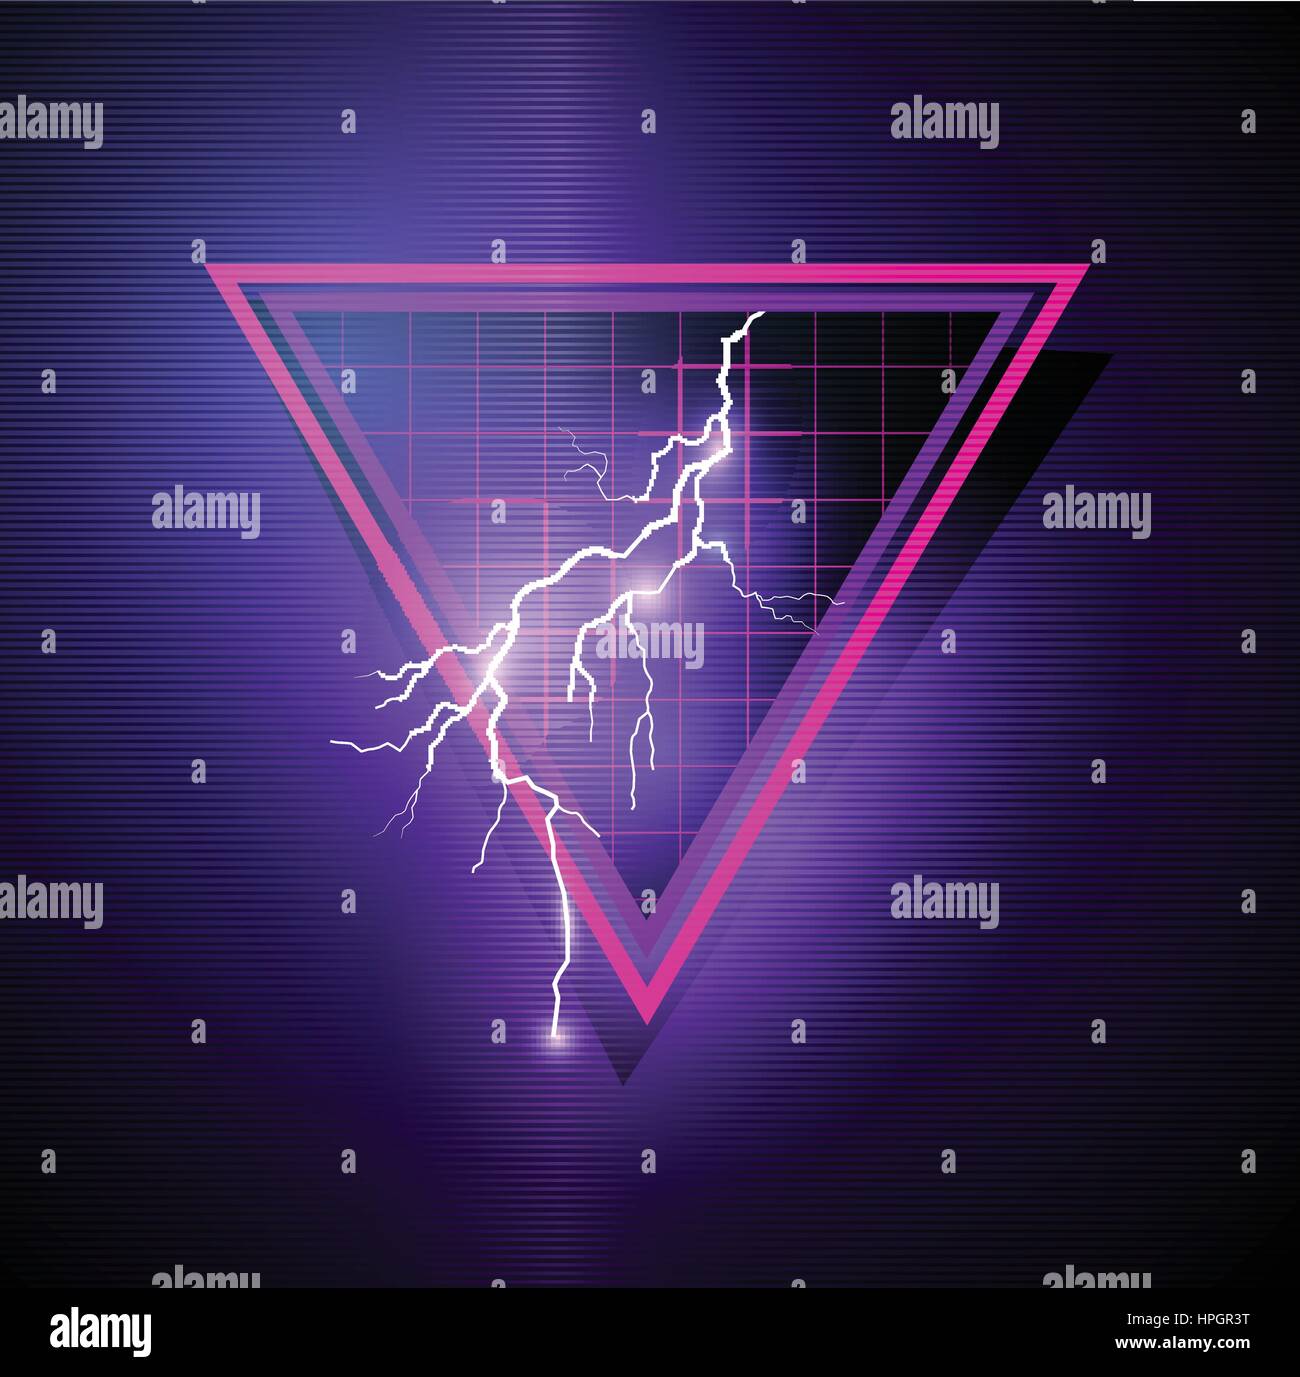 Retro 80er Element mit Dreiecken und Blitzen. Vektor-illustration Stock Vektor